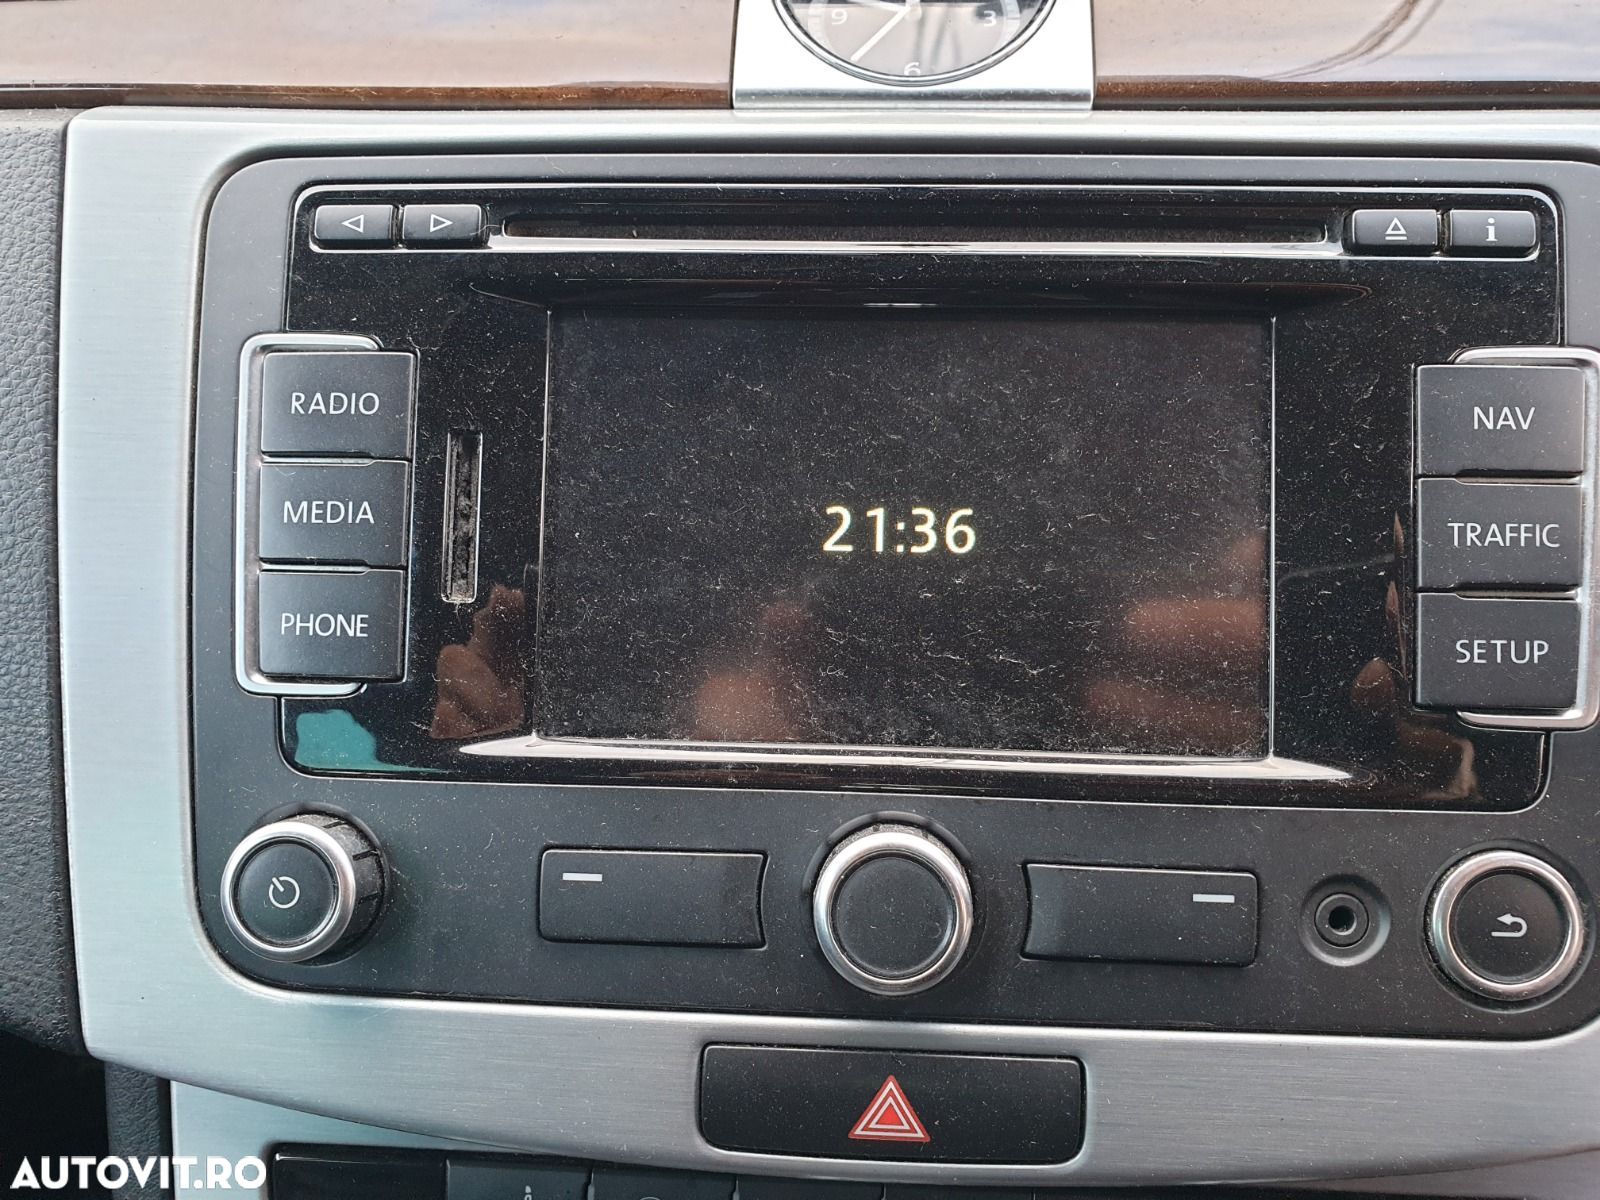 Navigatie Radio CD Player RNS 310 Volkswagen Transporter T5 2004 - 2015 [C3835] - 1